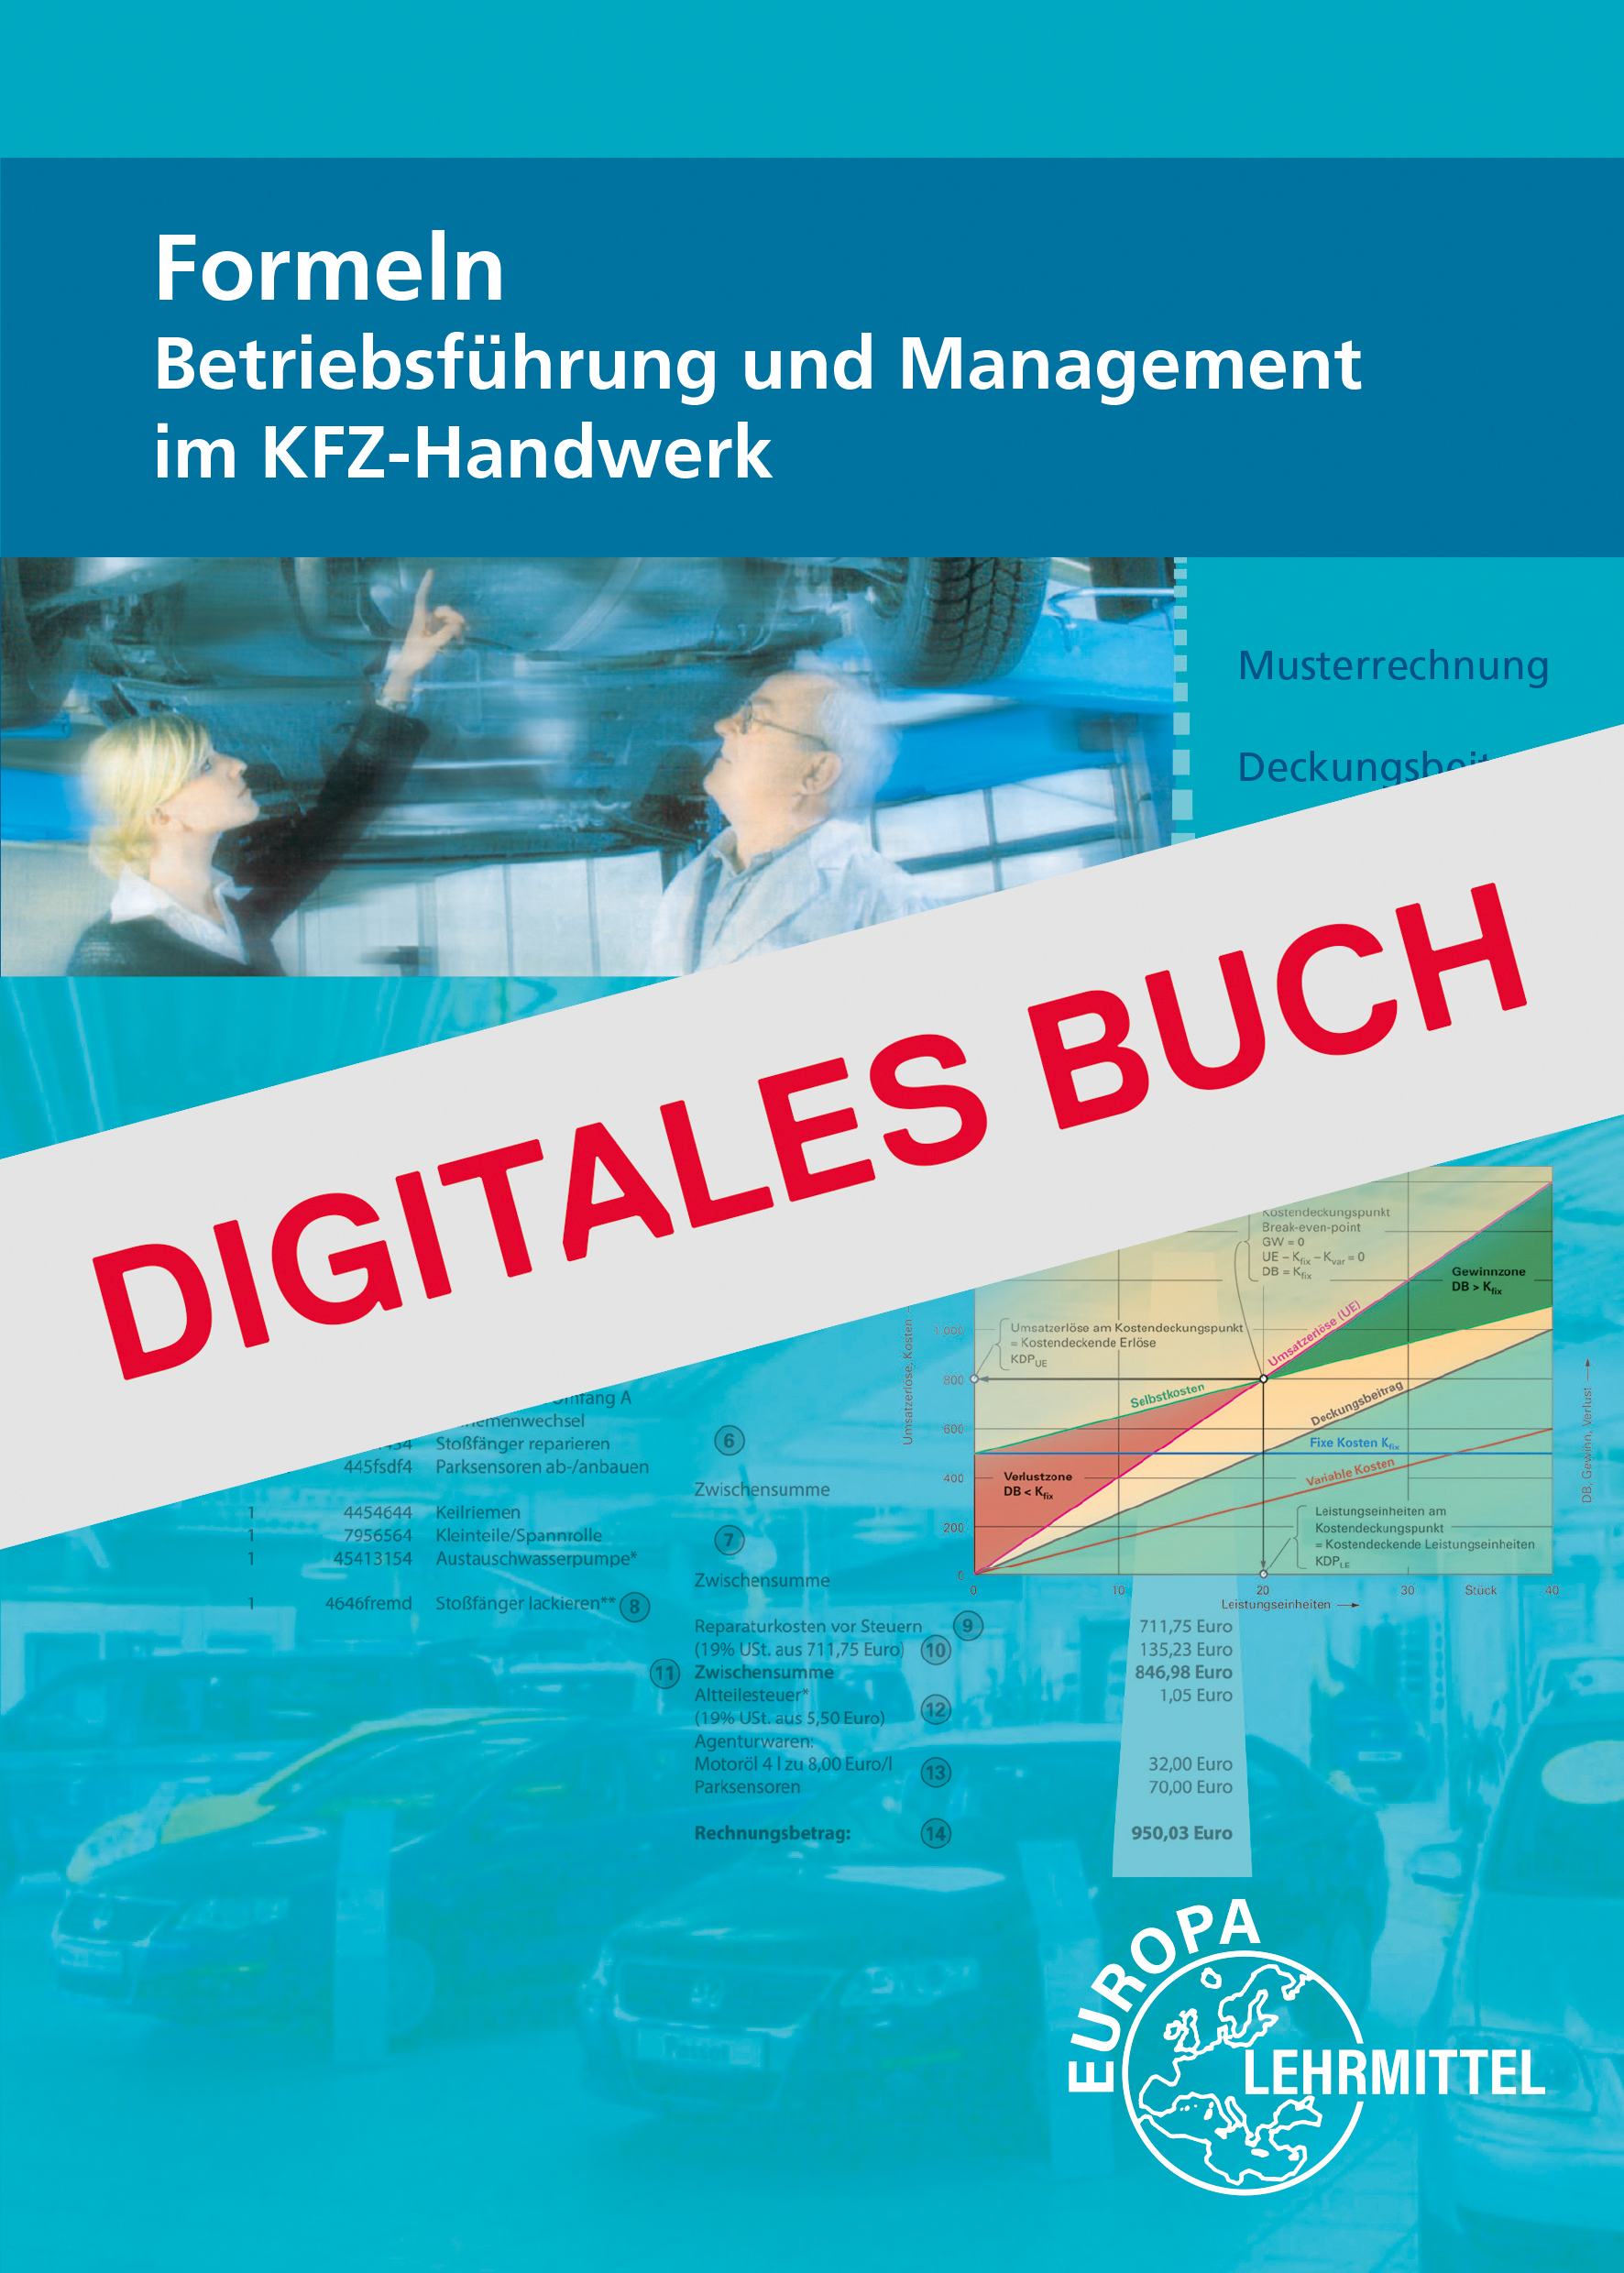 Formeln Betriebsführung und Management im KFZ-Handwerk - Digitales Buch